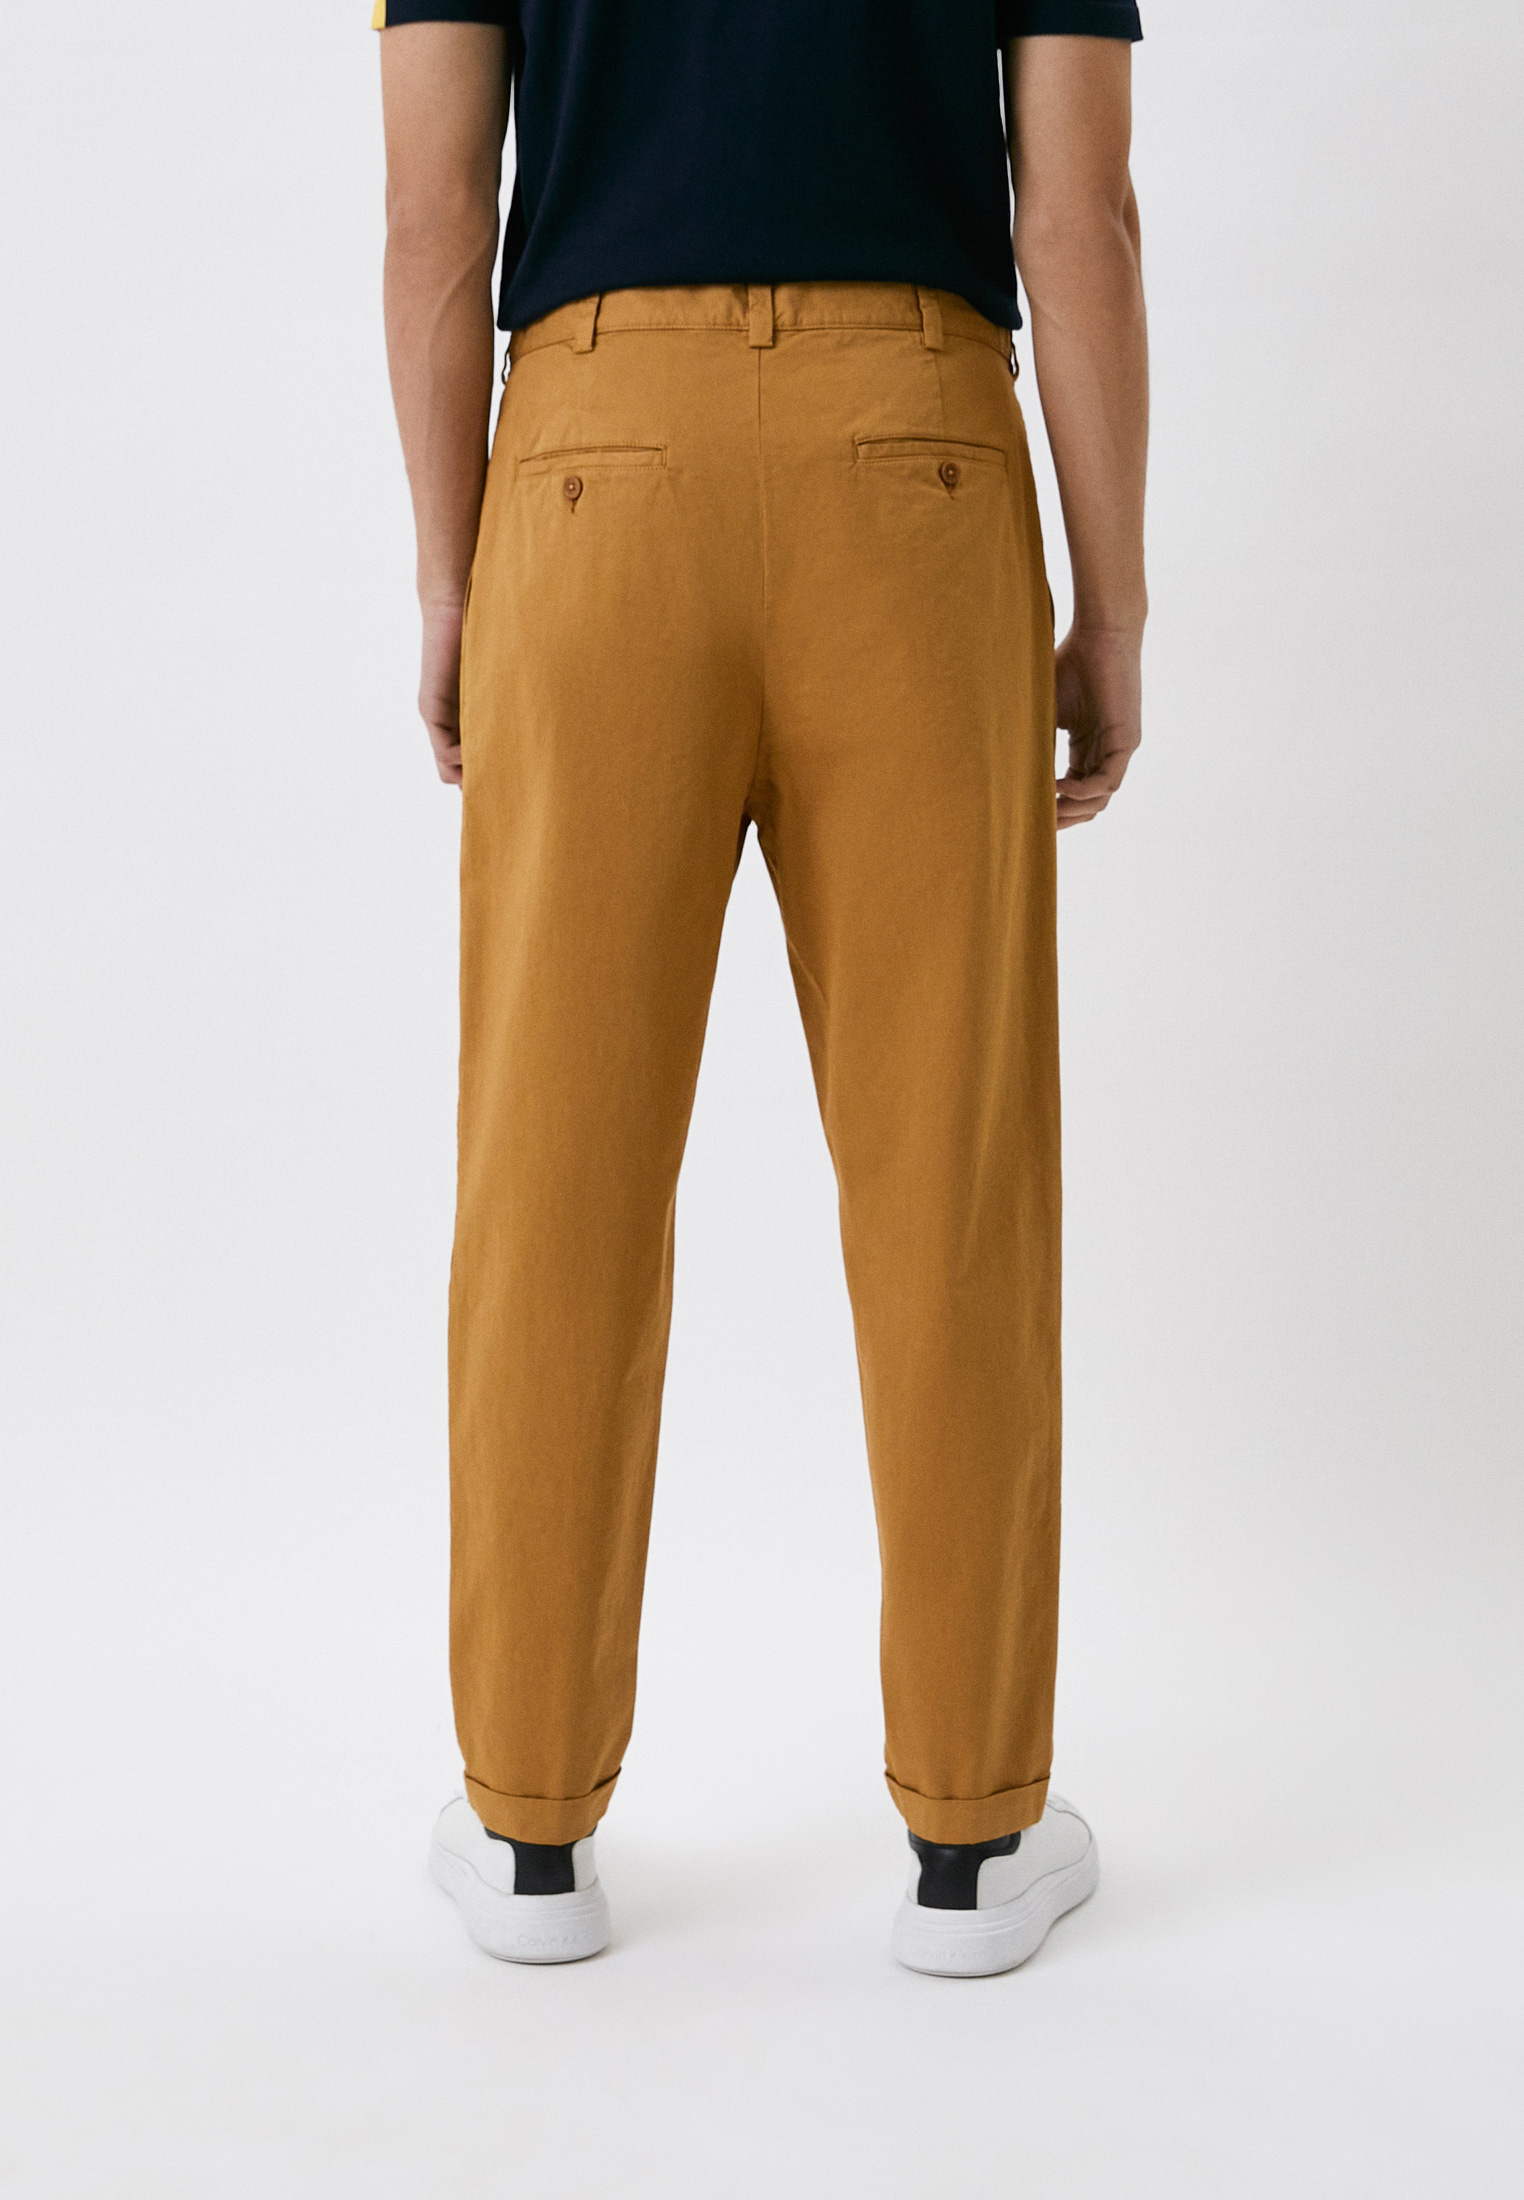 Мужские повседневные брюки Bikkembergs (Биккембергс) CP04700S3389: изображение 3